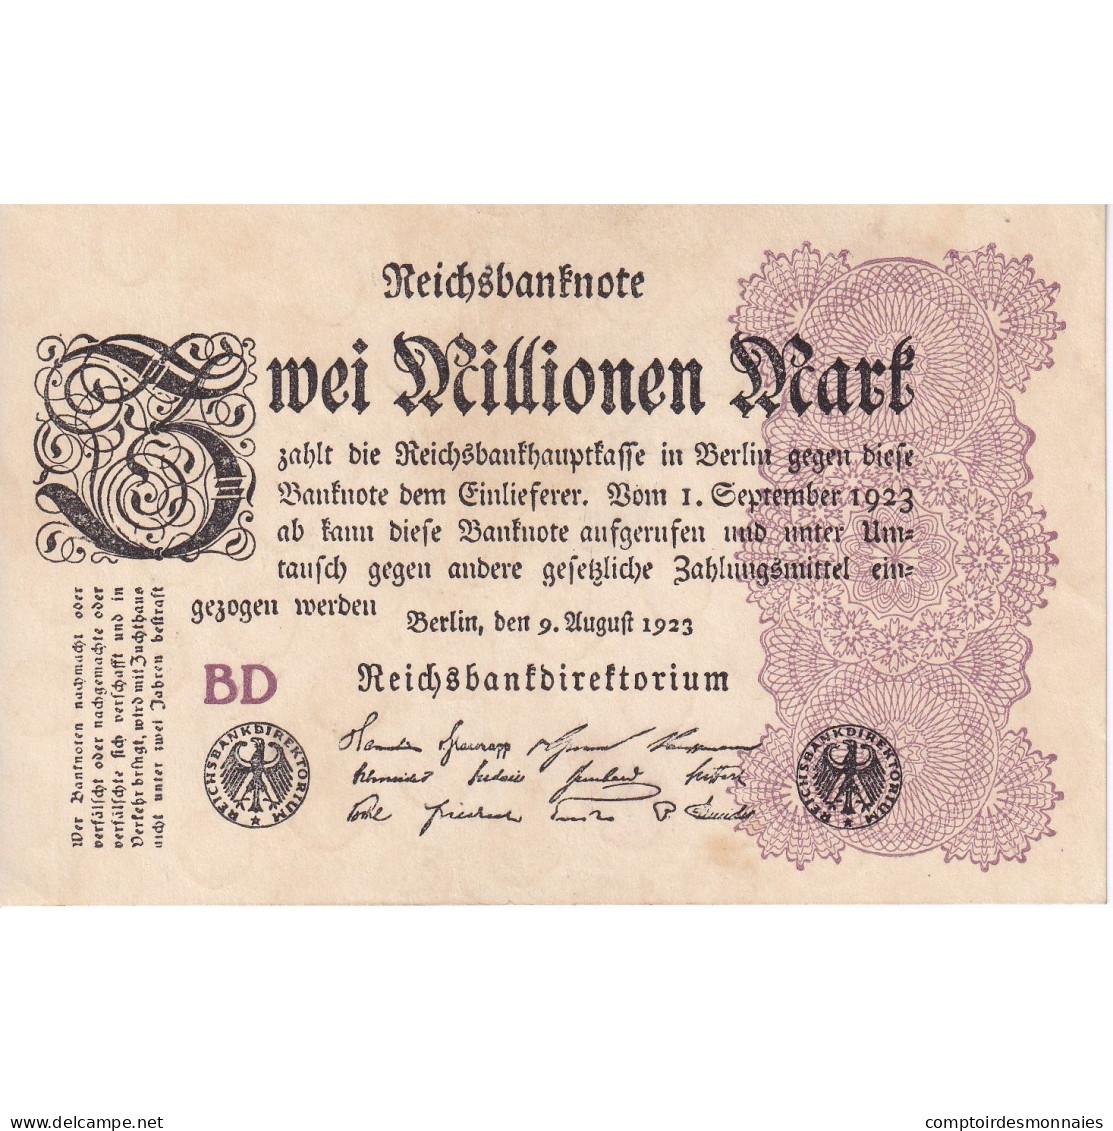 Billet, Allemagne, 2 Millionen Mark, 1923, KM:104a, TTB - 2 Millionen Mark